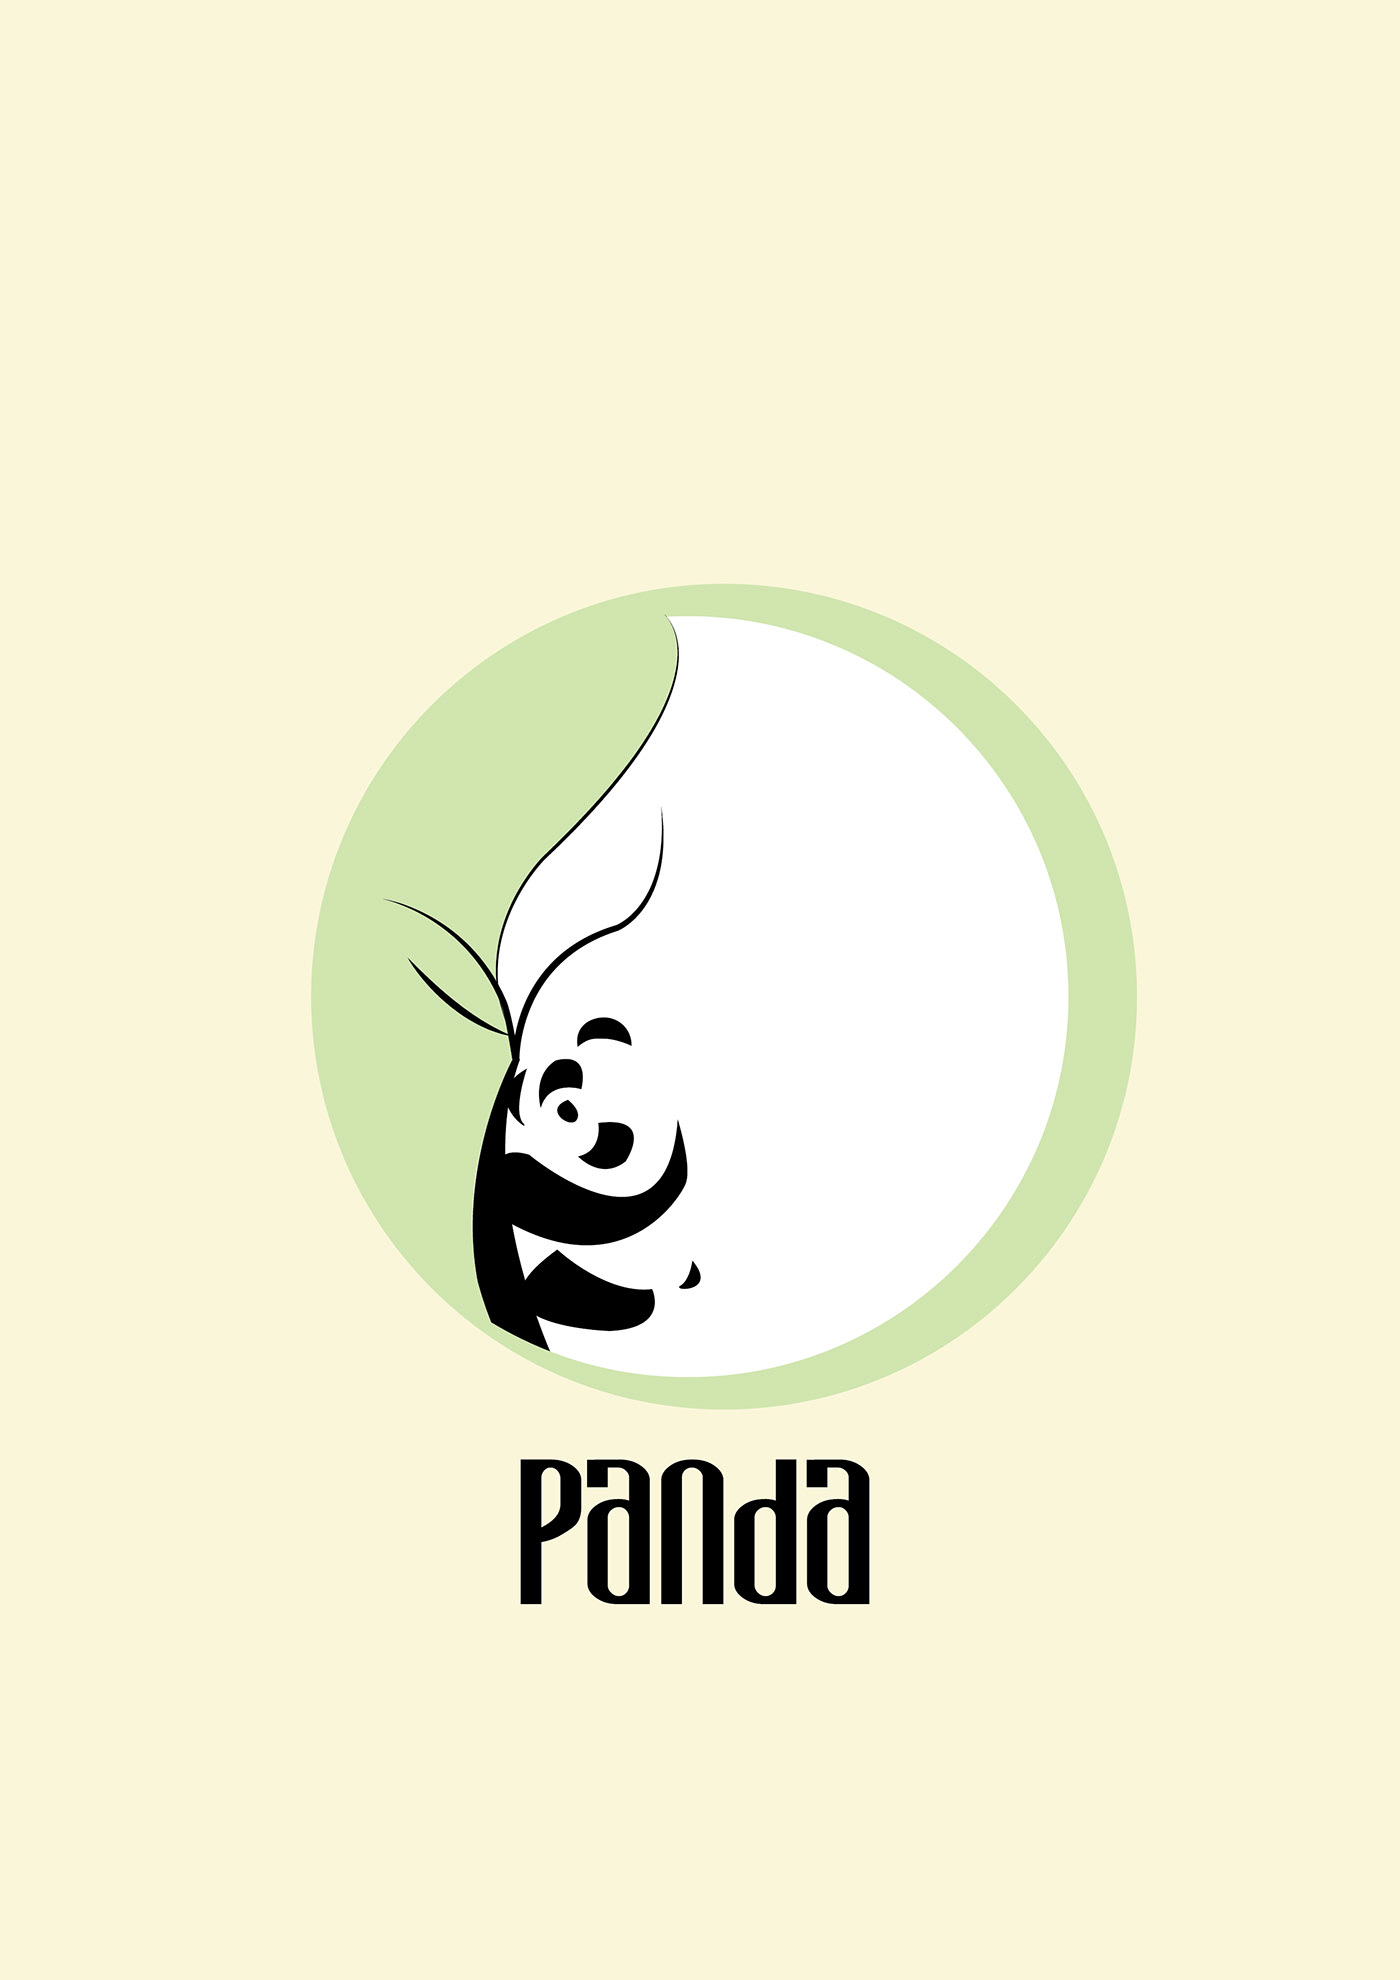 Panda  logo logos art brand